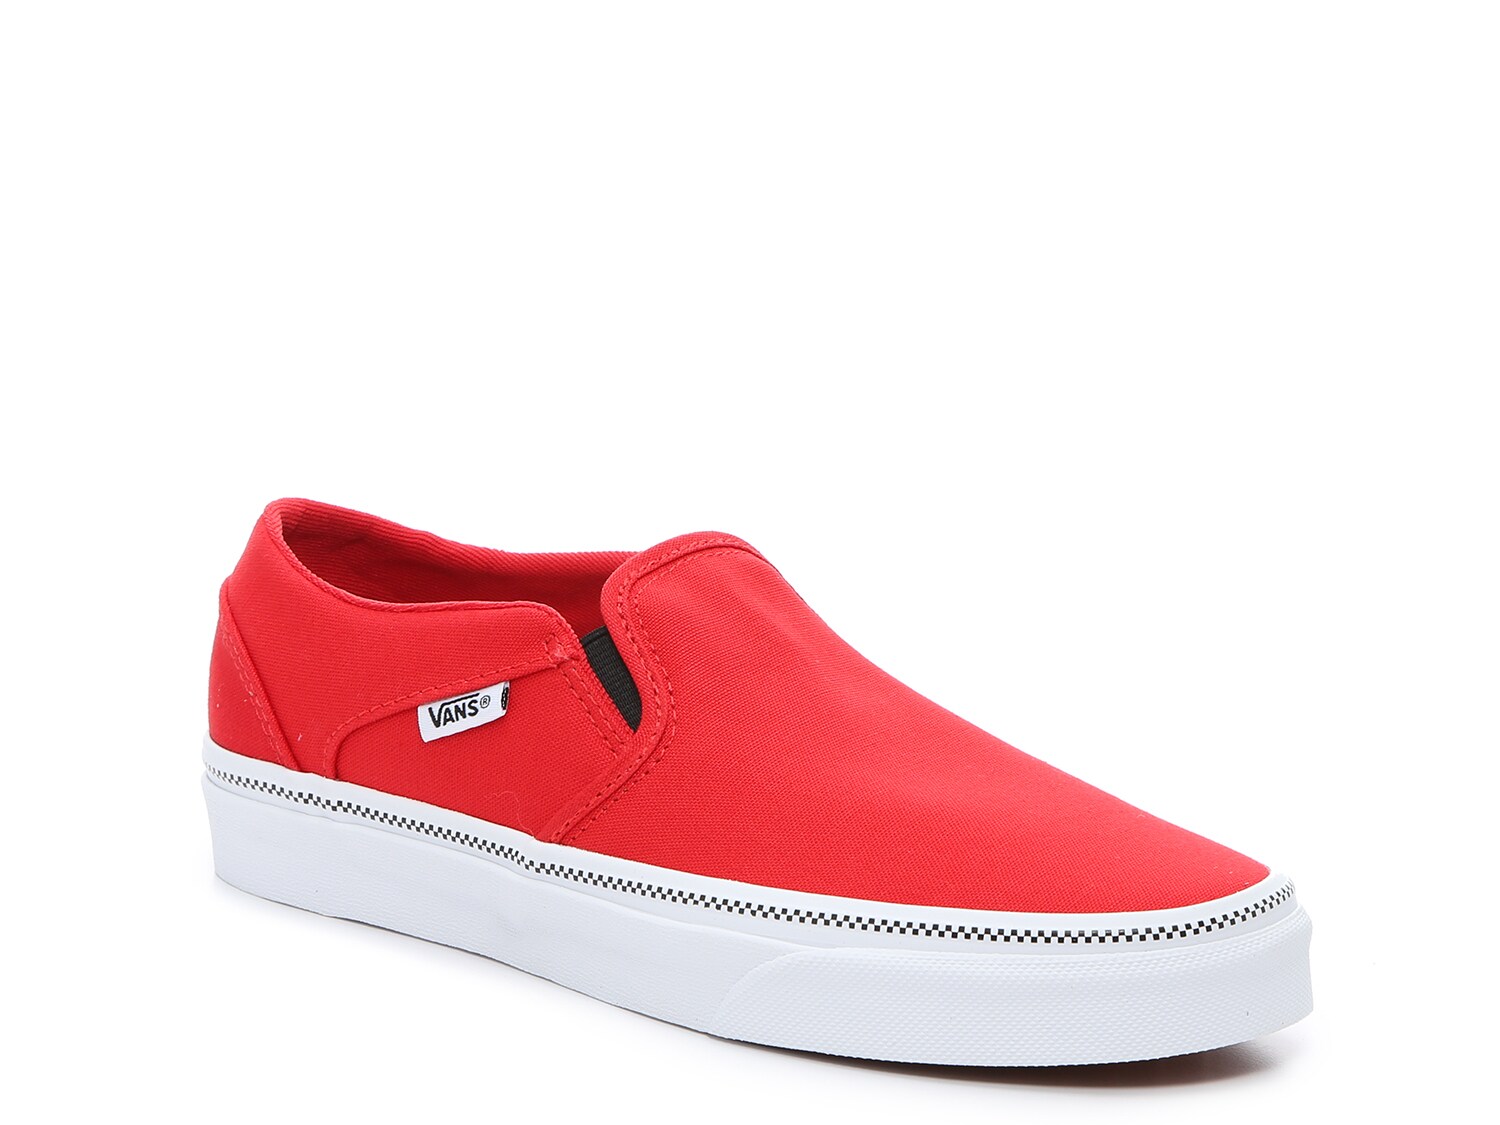 red slip on sneaker